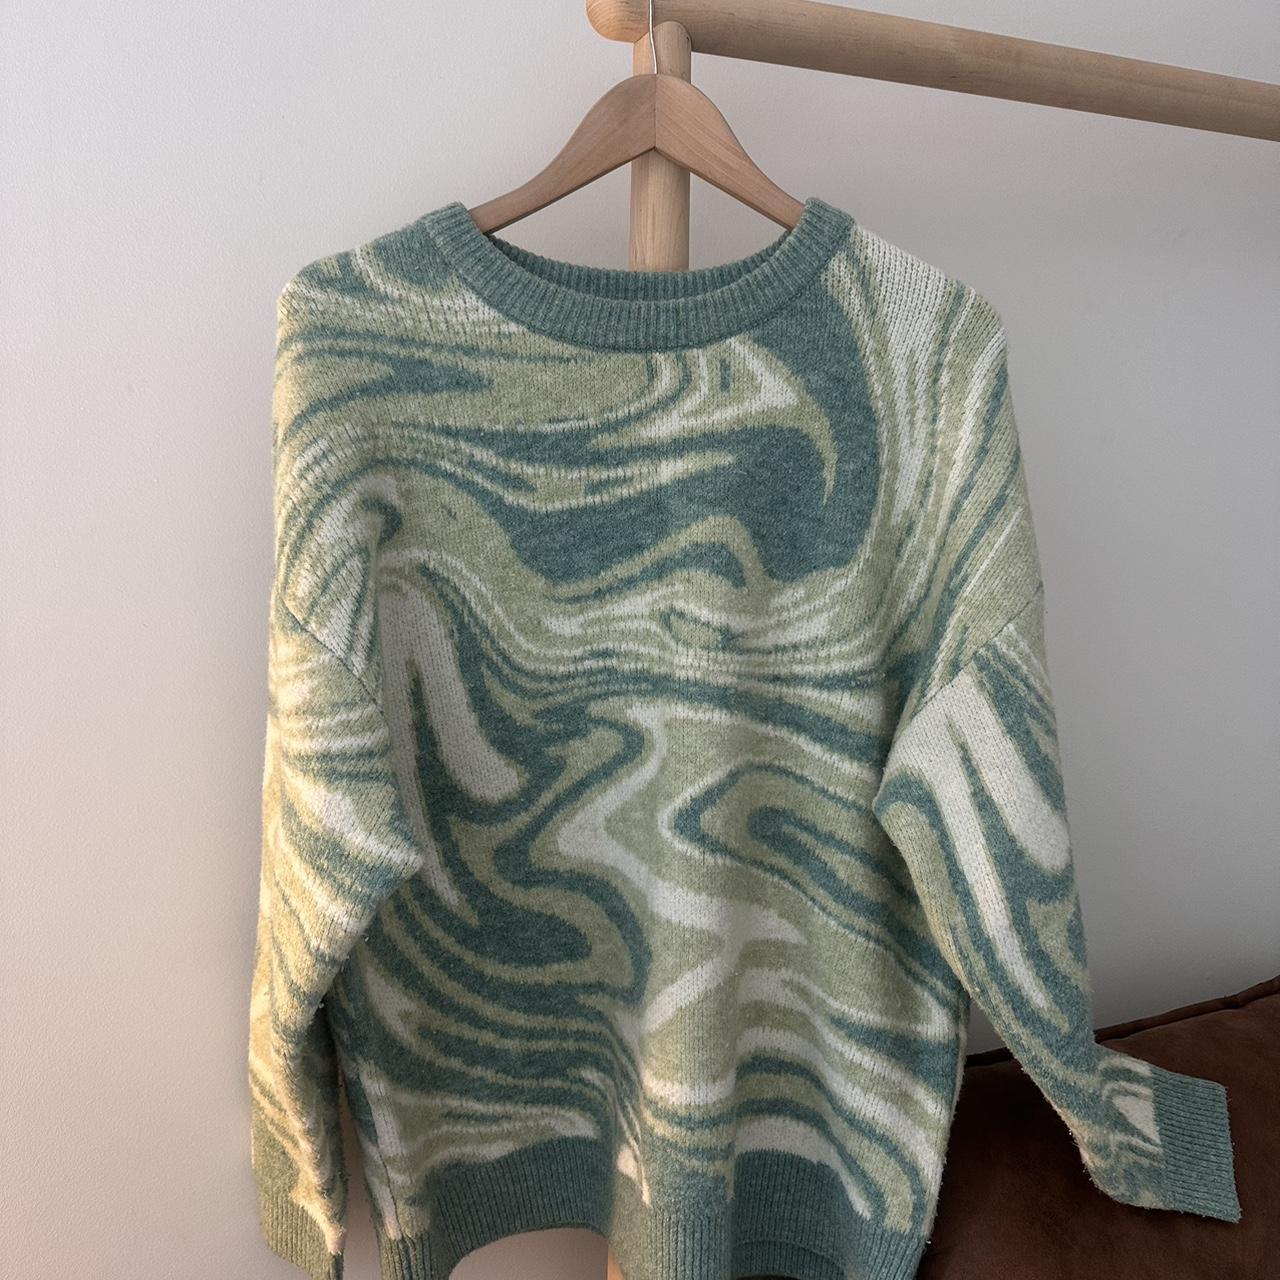 Swirly green sweater - Depop